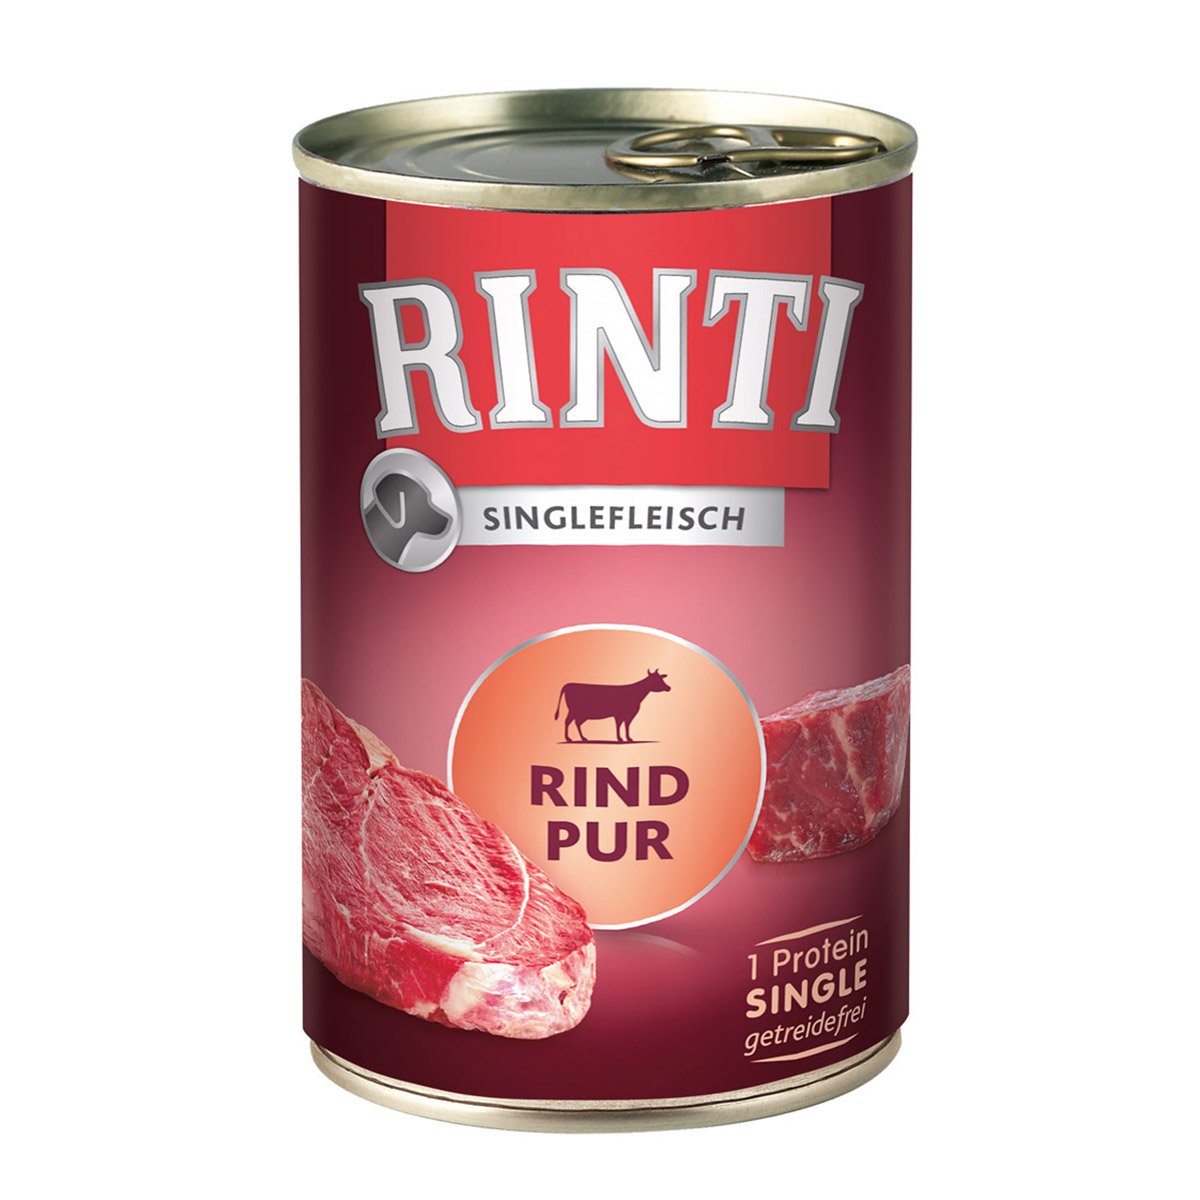 Rinti Singlefleisch Rind pur 24x400g